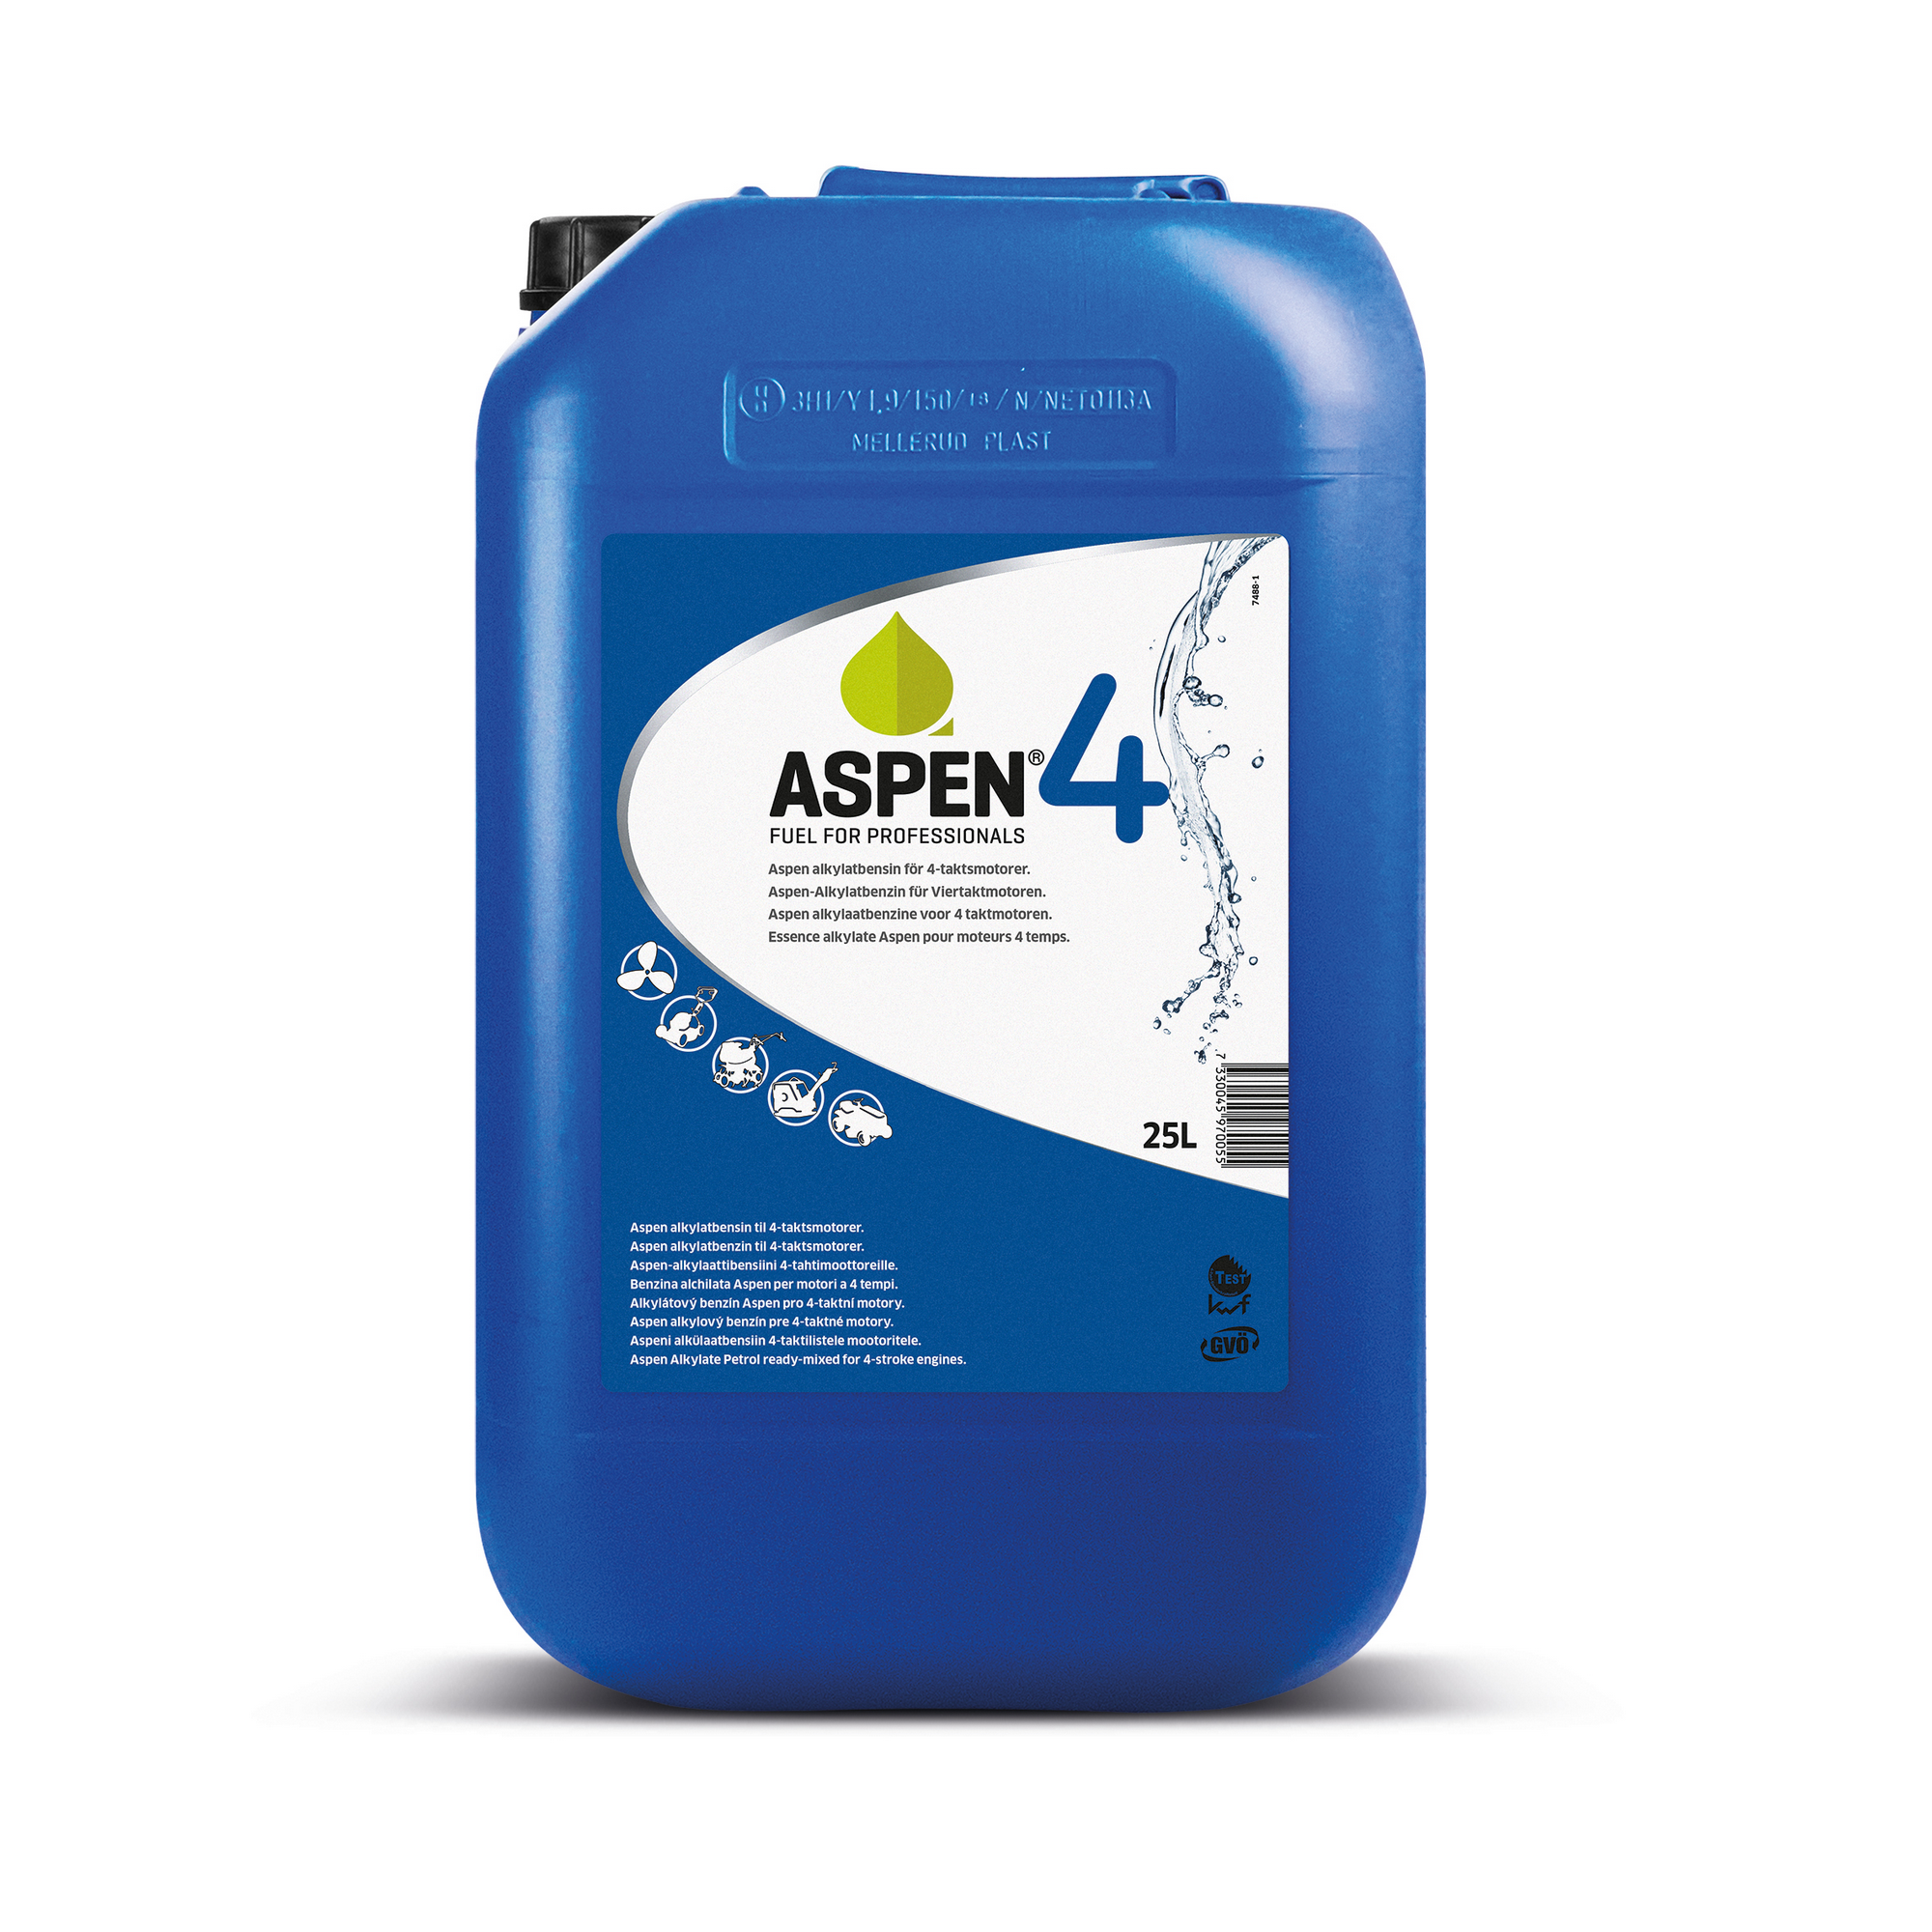 Alkylatbenzin 'Aspen 4' für Viertaktmotoren Öl 25 l + product picture